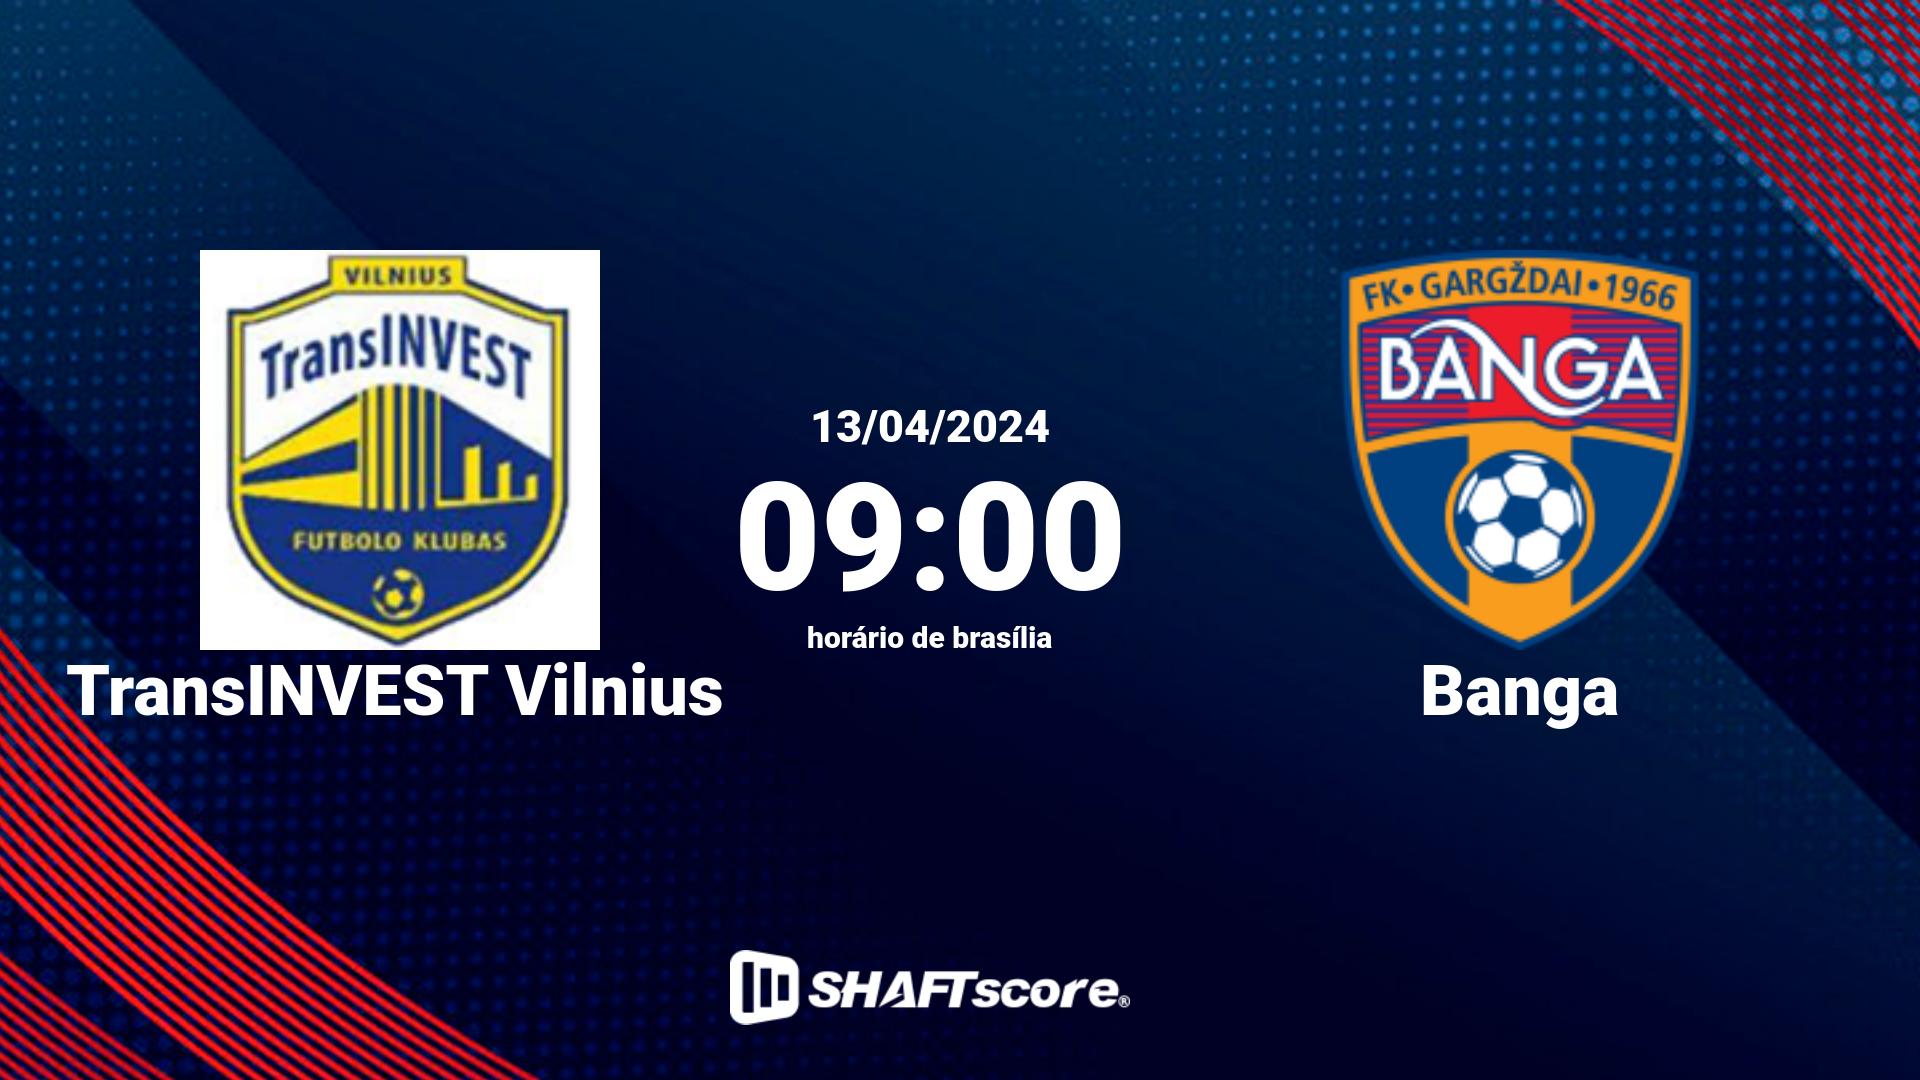 Estatísticas do jogo TransINVEST Vilnius vs Banga 13.04 09:00